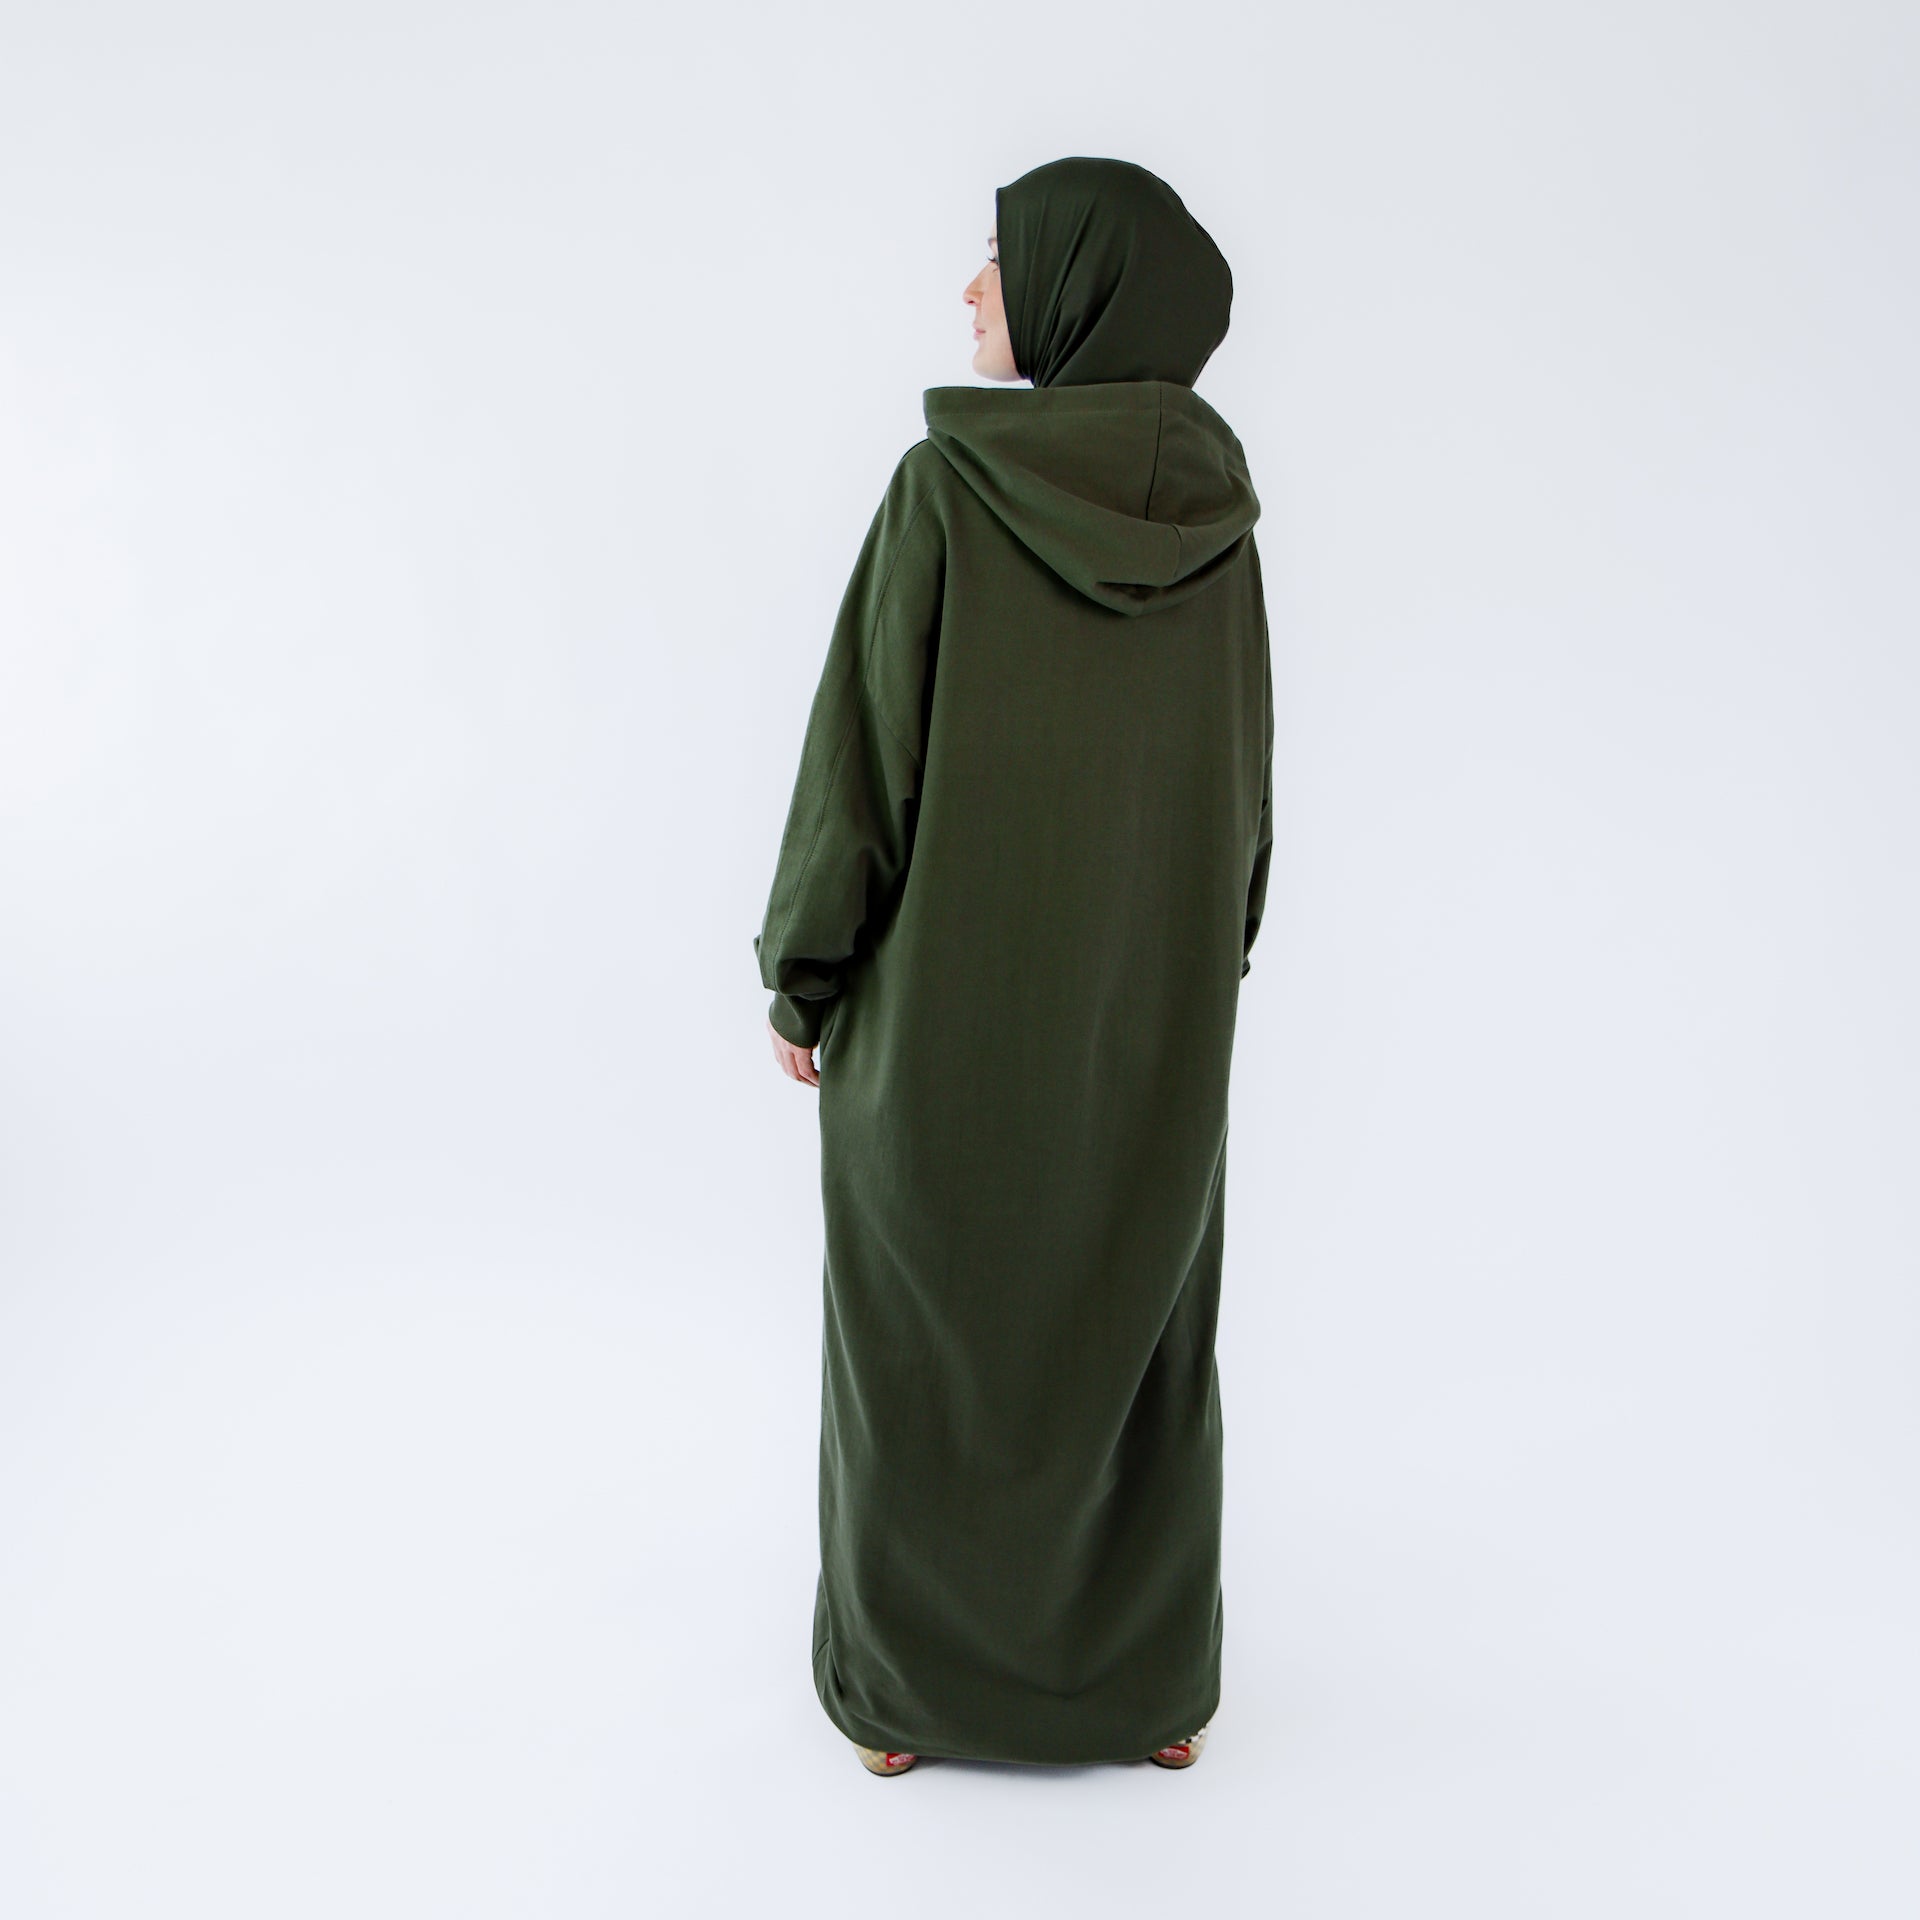 Muslim dress for women "Khaki Oasis" abaya dress style 3